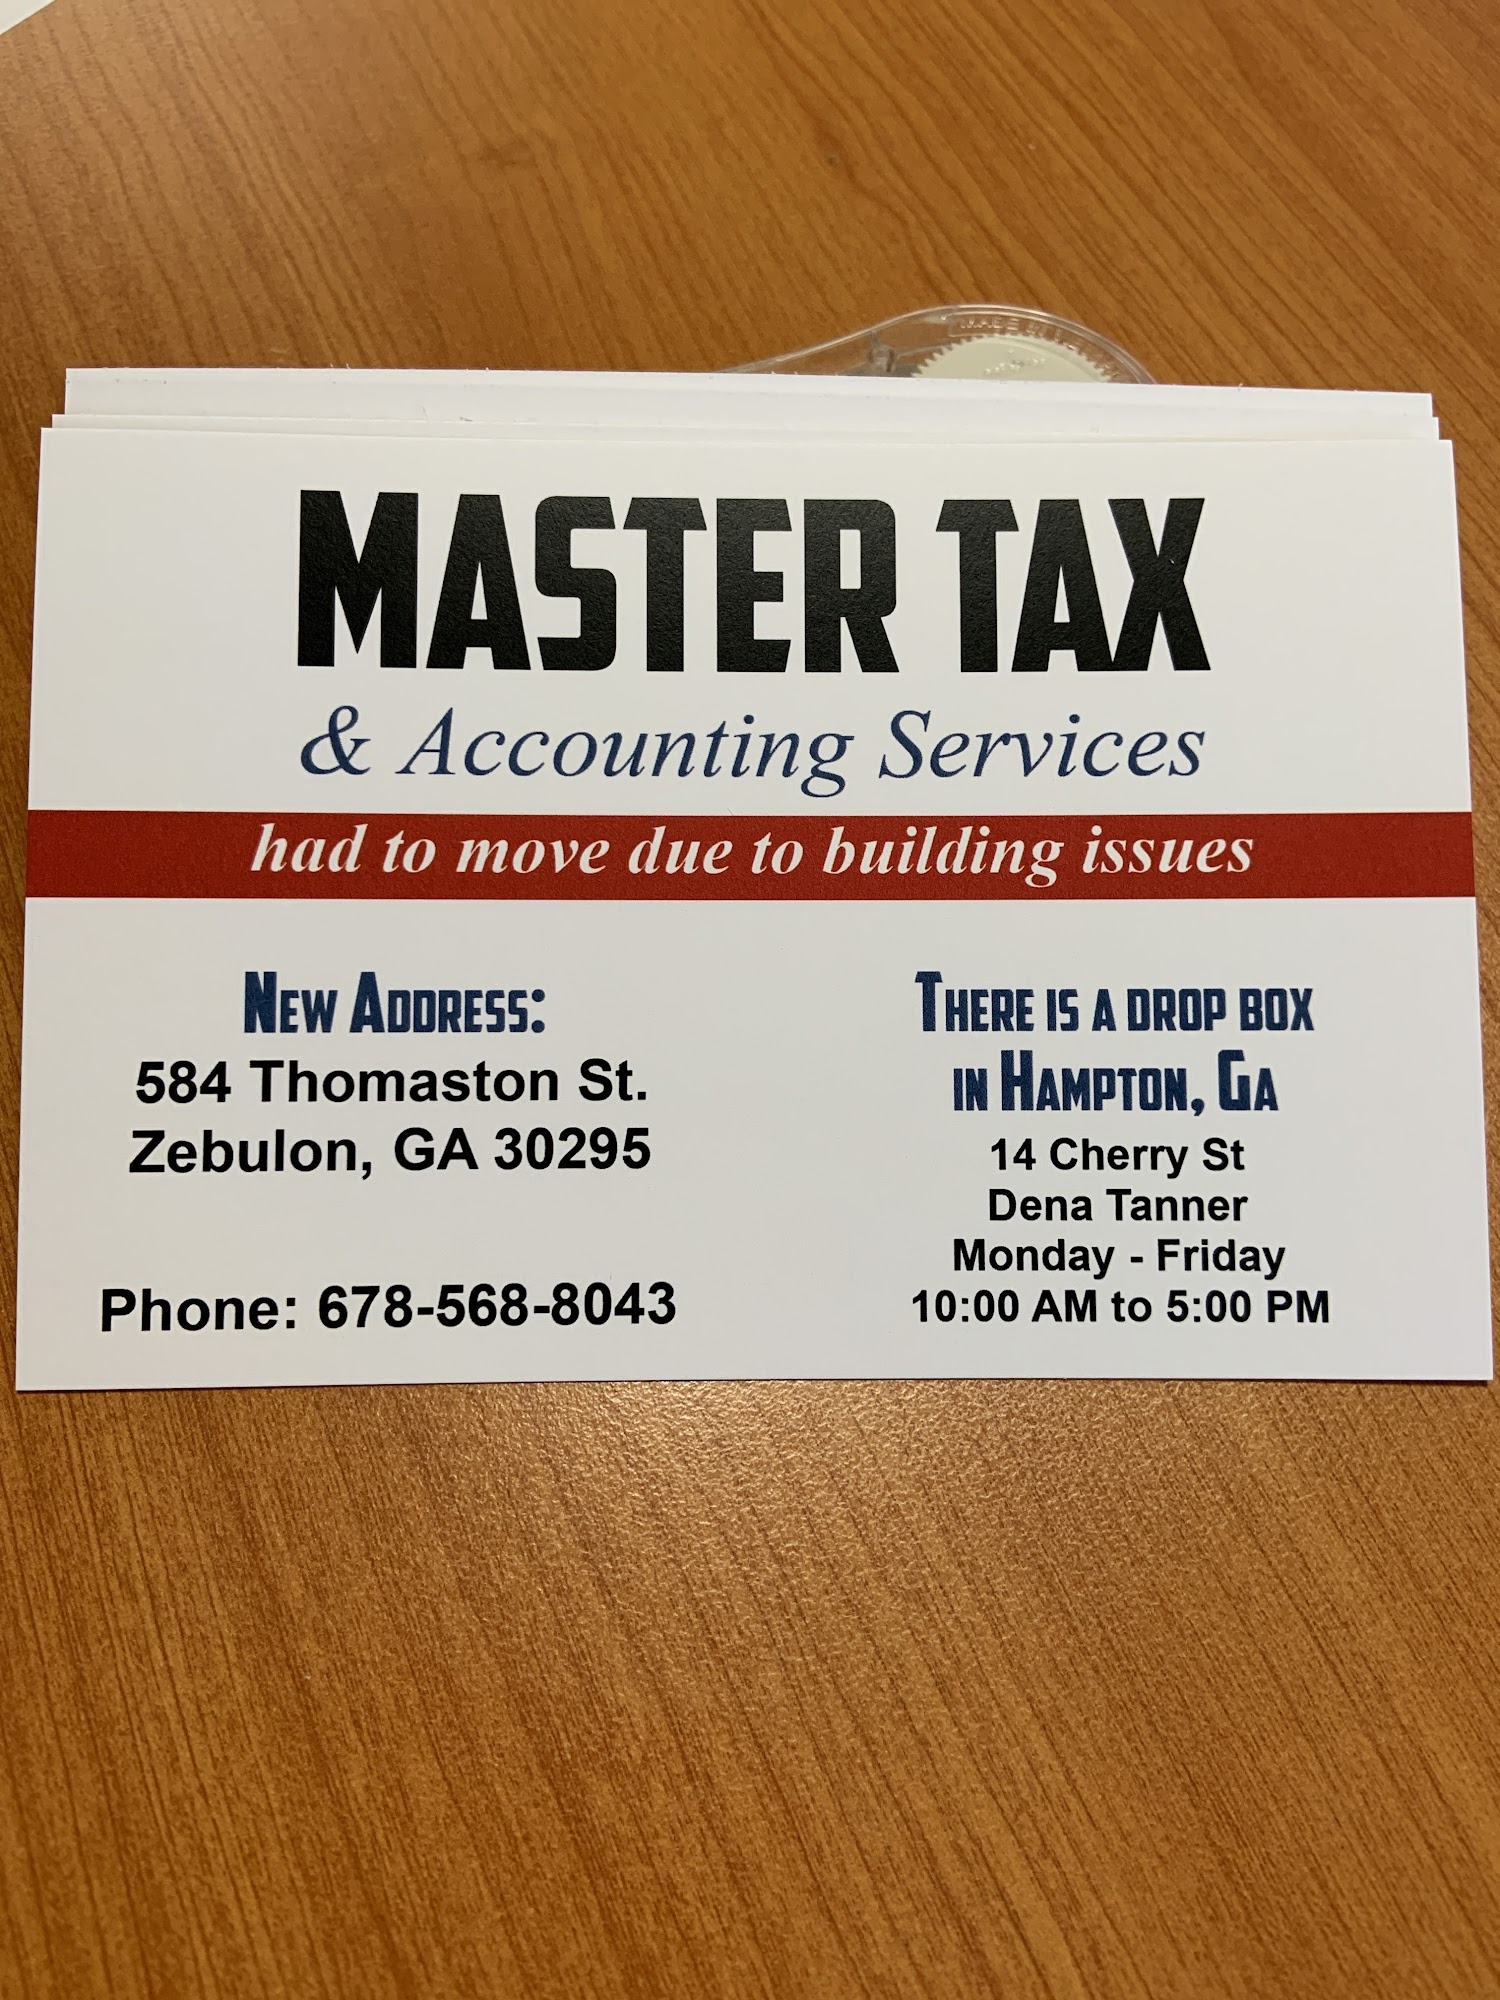 Master Tax & Accounting Services 584 Thomaston St, Zebulon Georgia 30295